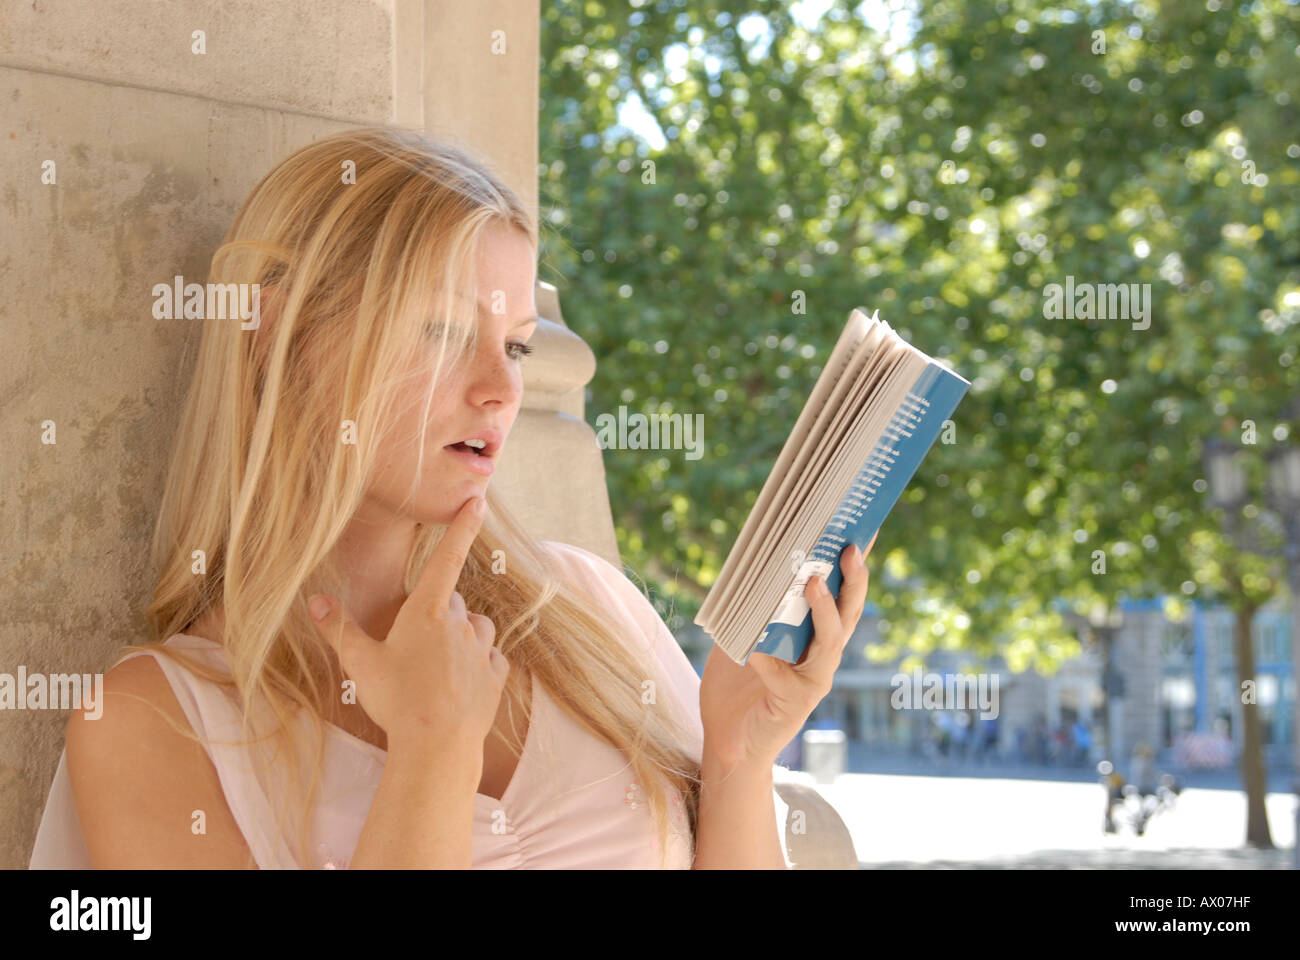 Blond Buch Frau Haare junge lange lesen liest sinnlich Sommer sommerlich Stadt City Teenager vertraeumt Stock Photo